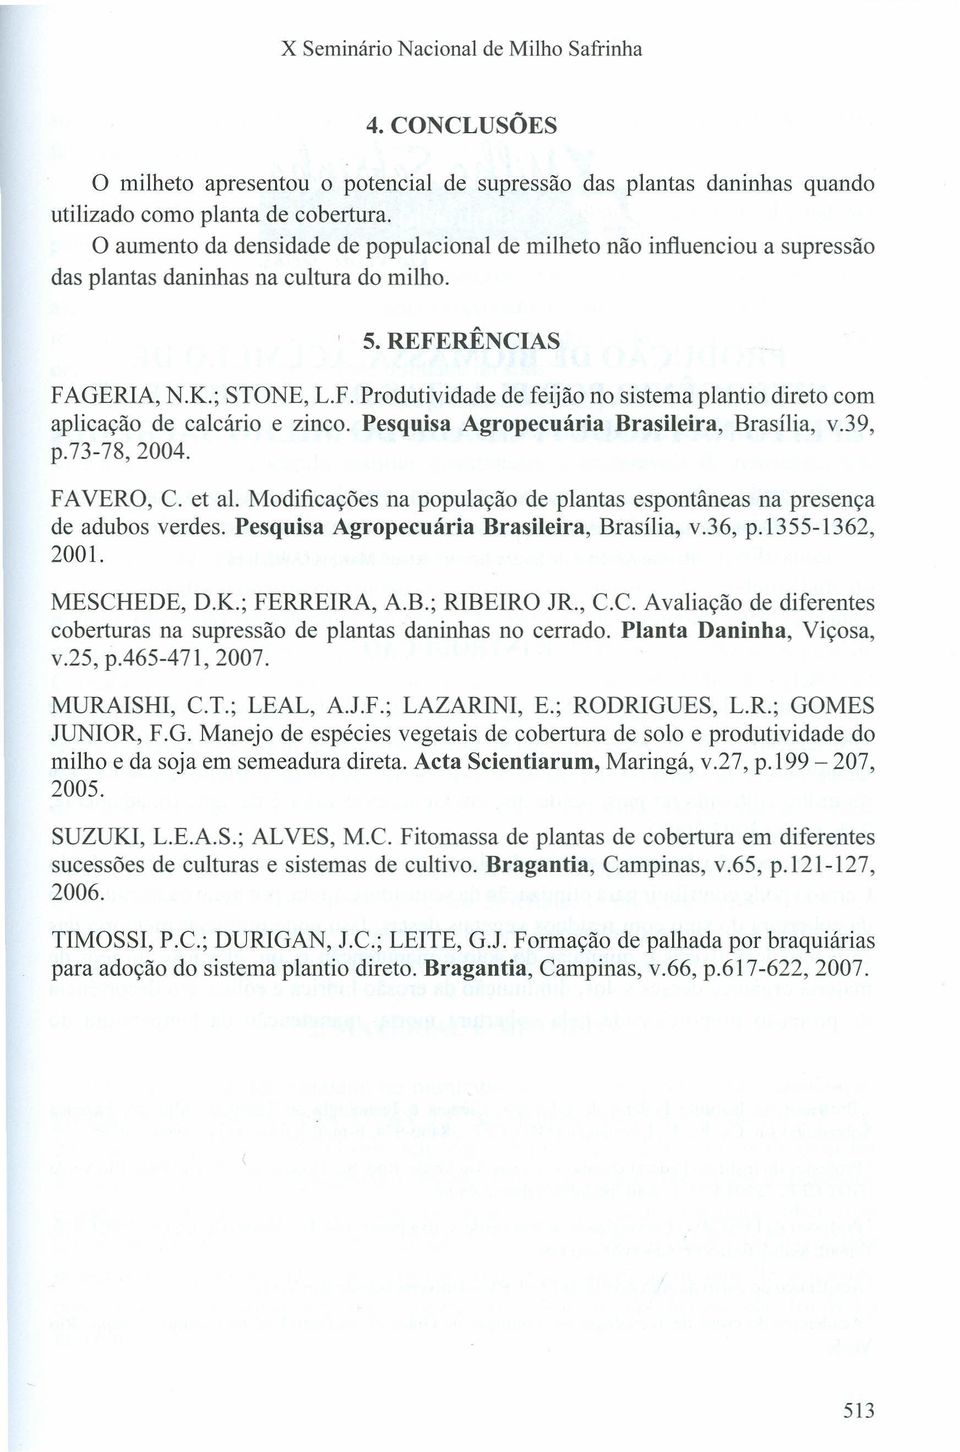 RÊNCIAS FAGERIA, N.K.; STONE, L.F. Produtividade de feijão no sistema plantio direto com aplicação de calcário e zinco. Pesquisa Agropecuária Brasileira, Brasília, v.39, p.73-78,2004. FAVERO, C.